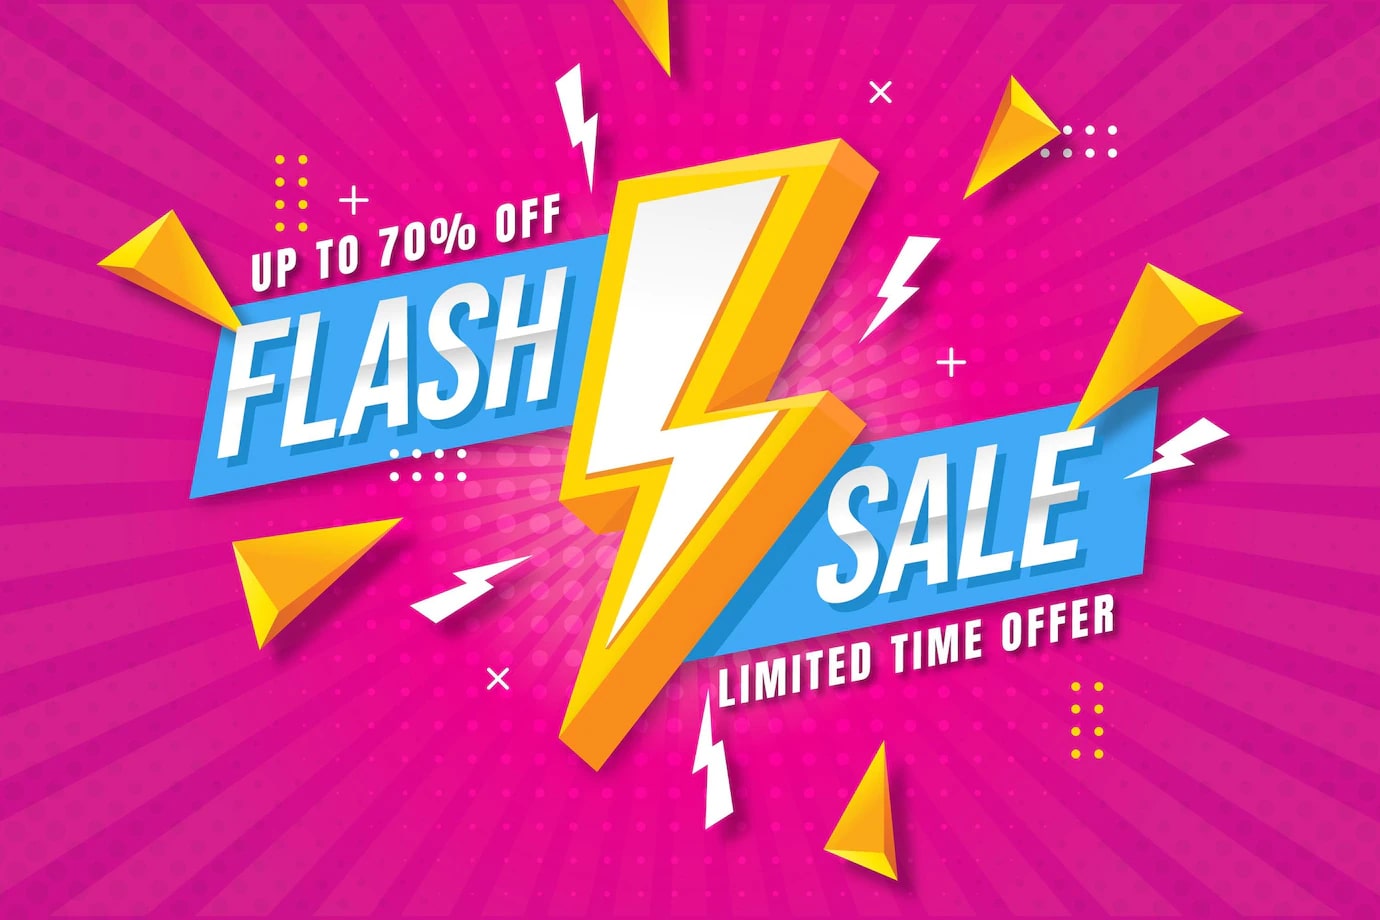 Flash sale là gì? Bí quyết bùng nổ doanh số với Flash sale